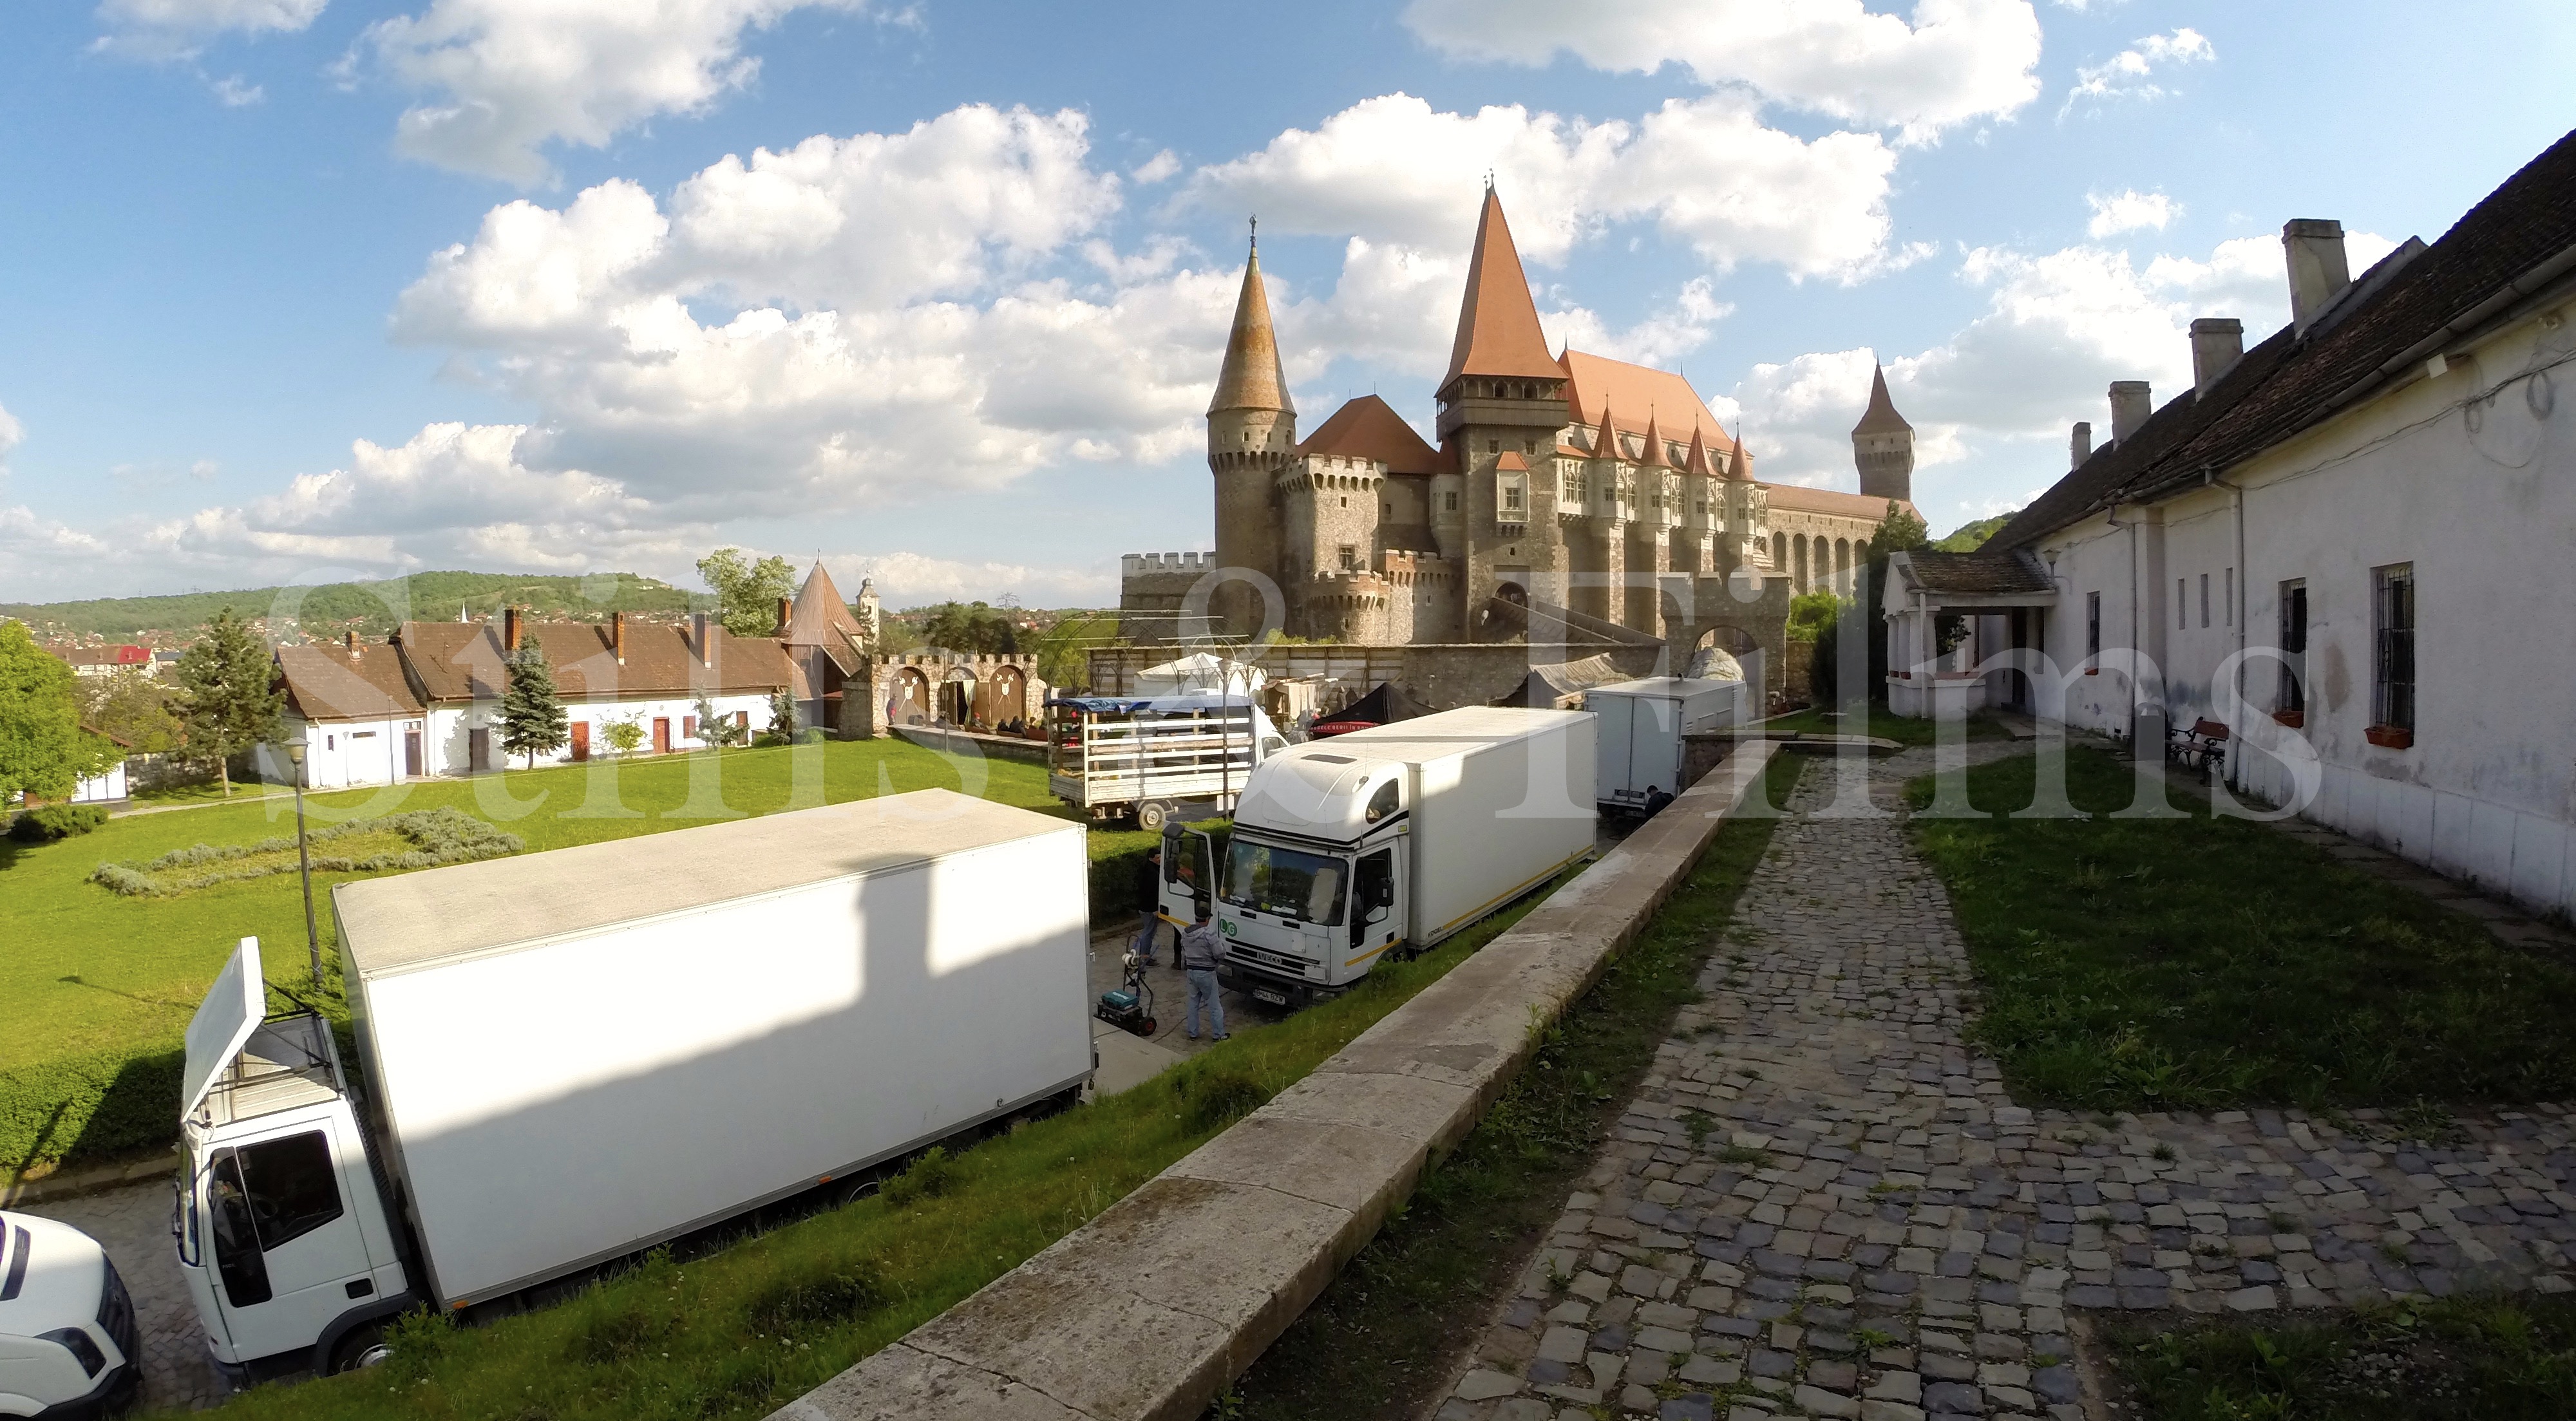 Filming Behind the Scenes in Eastern Europe